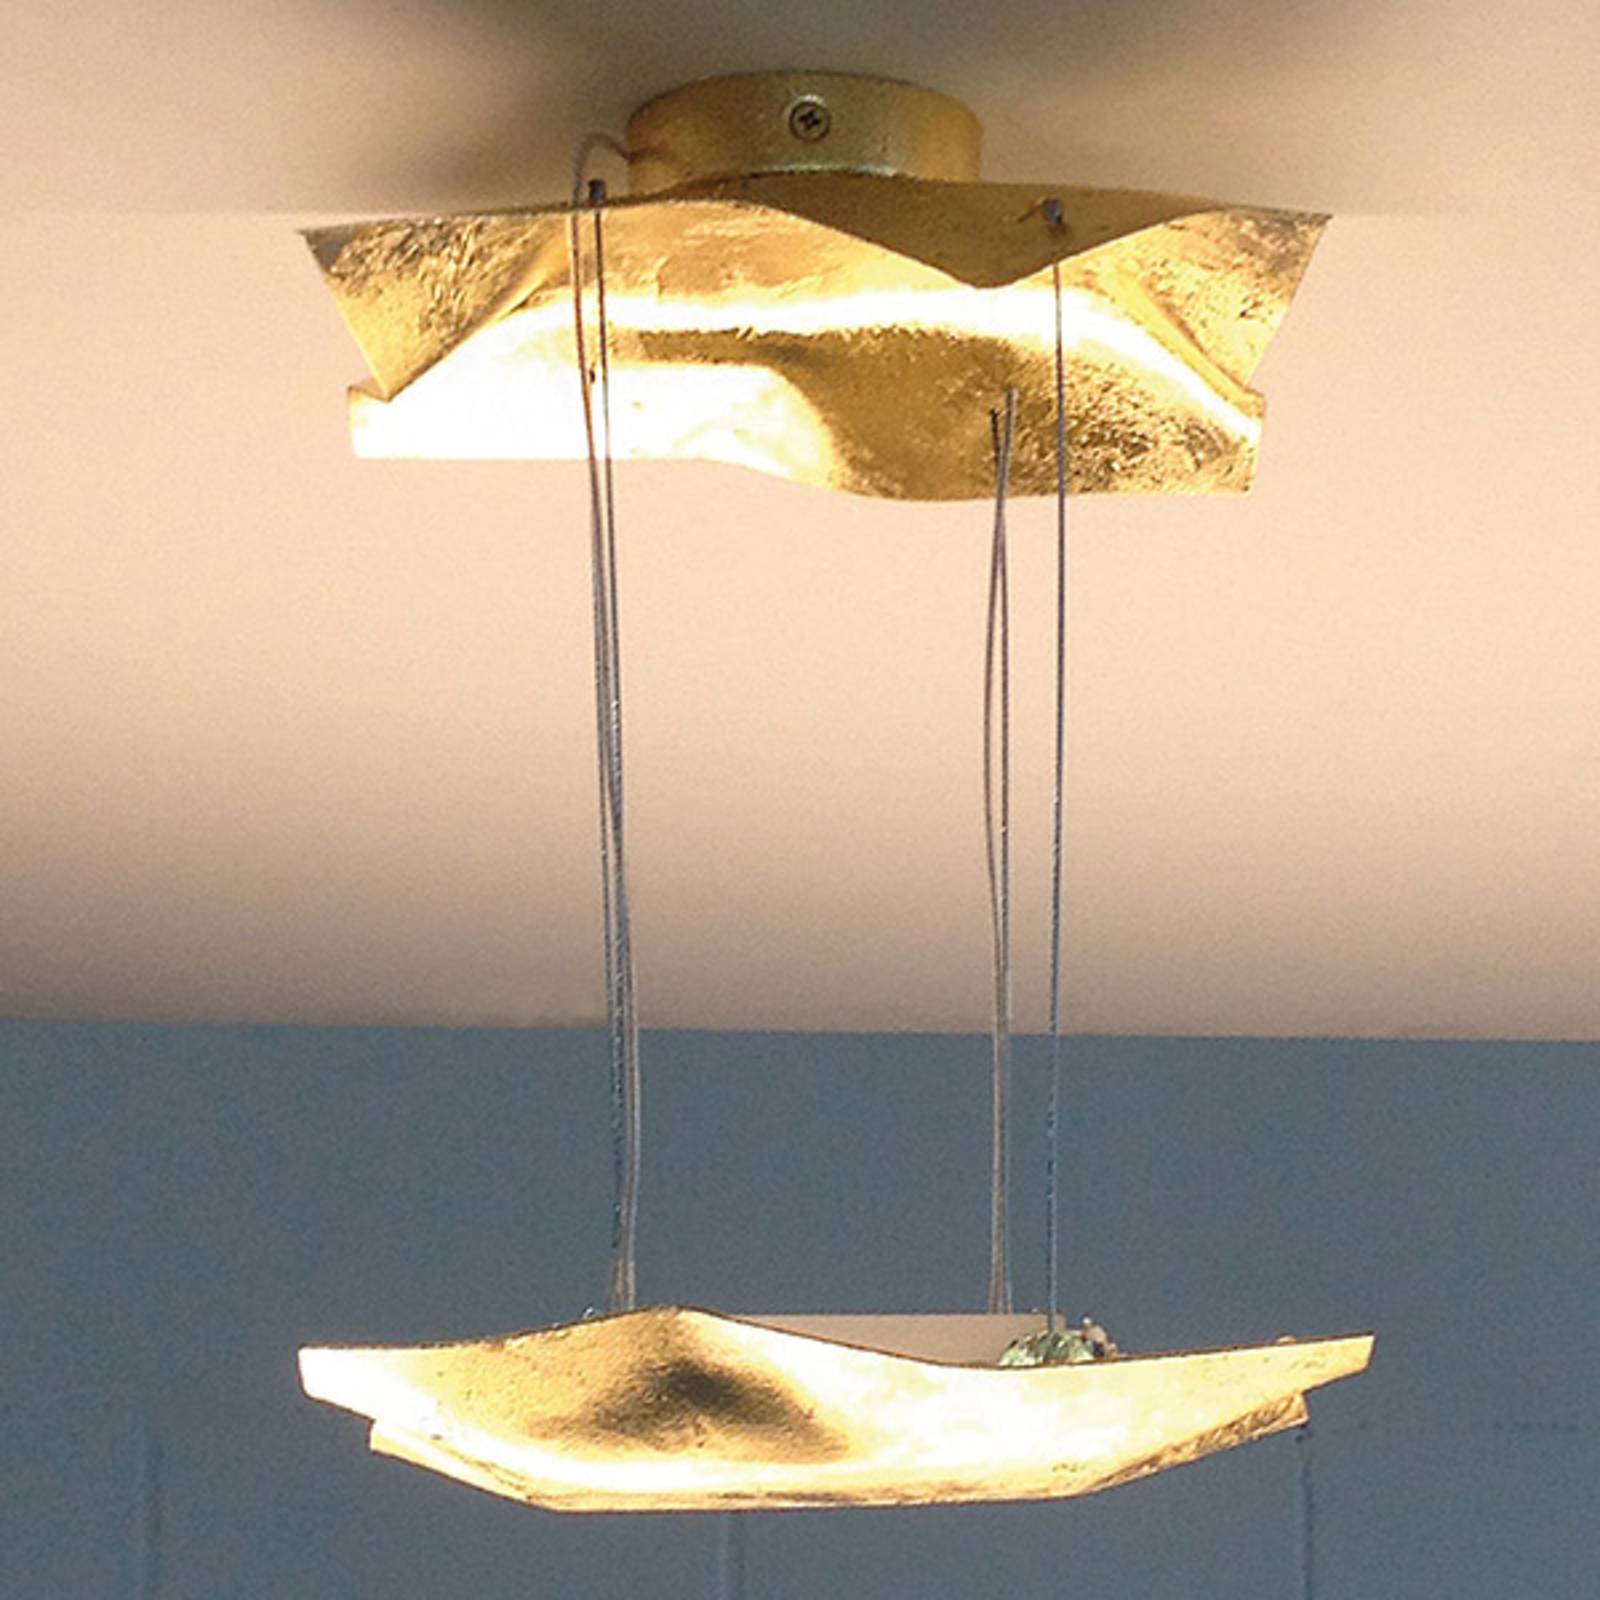 Knikerboker Piccola Crash gold leaf hanging light